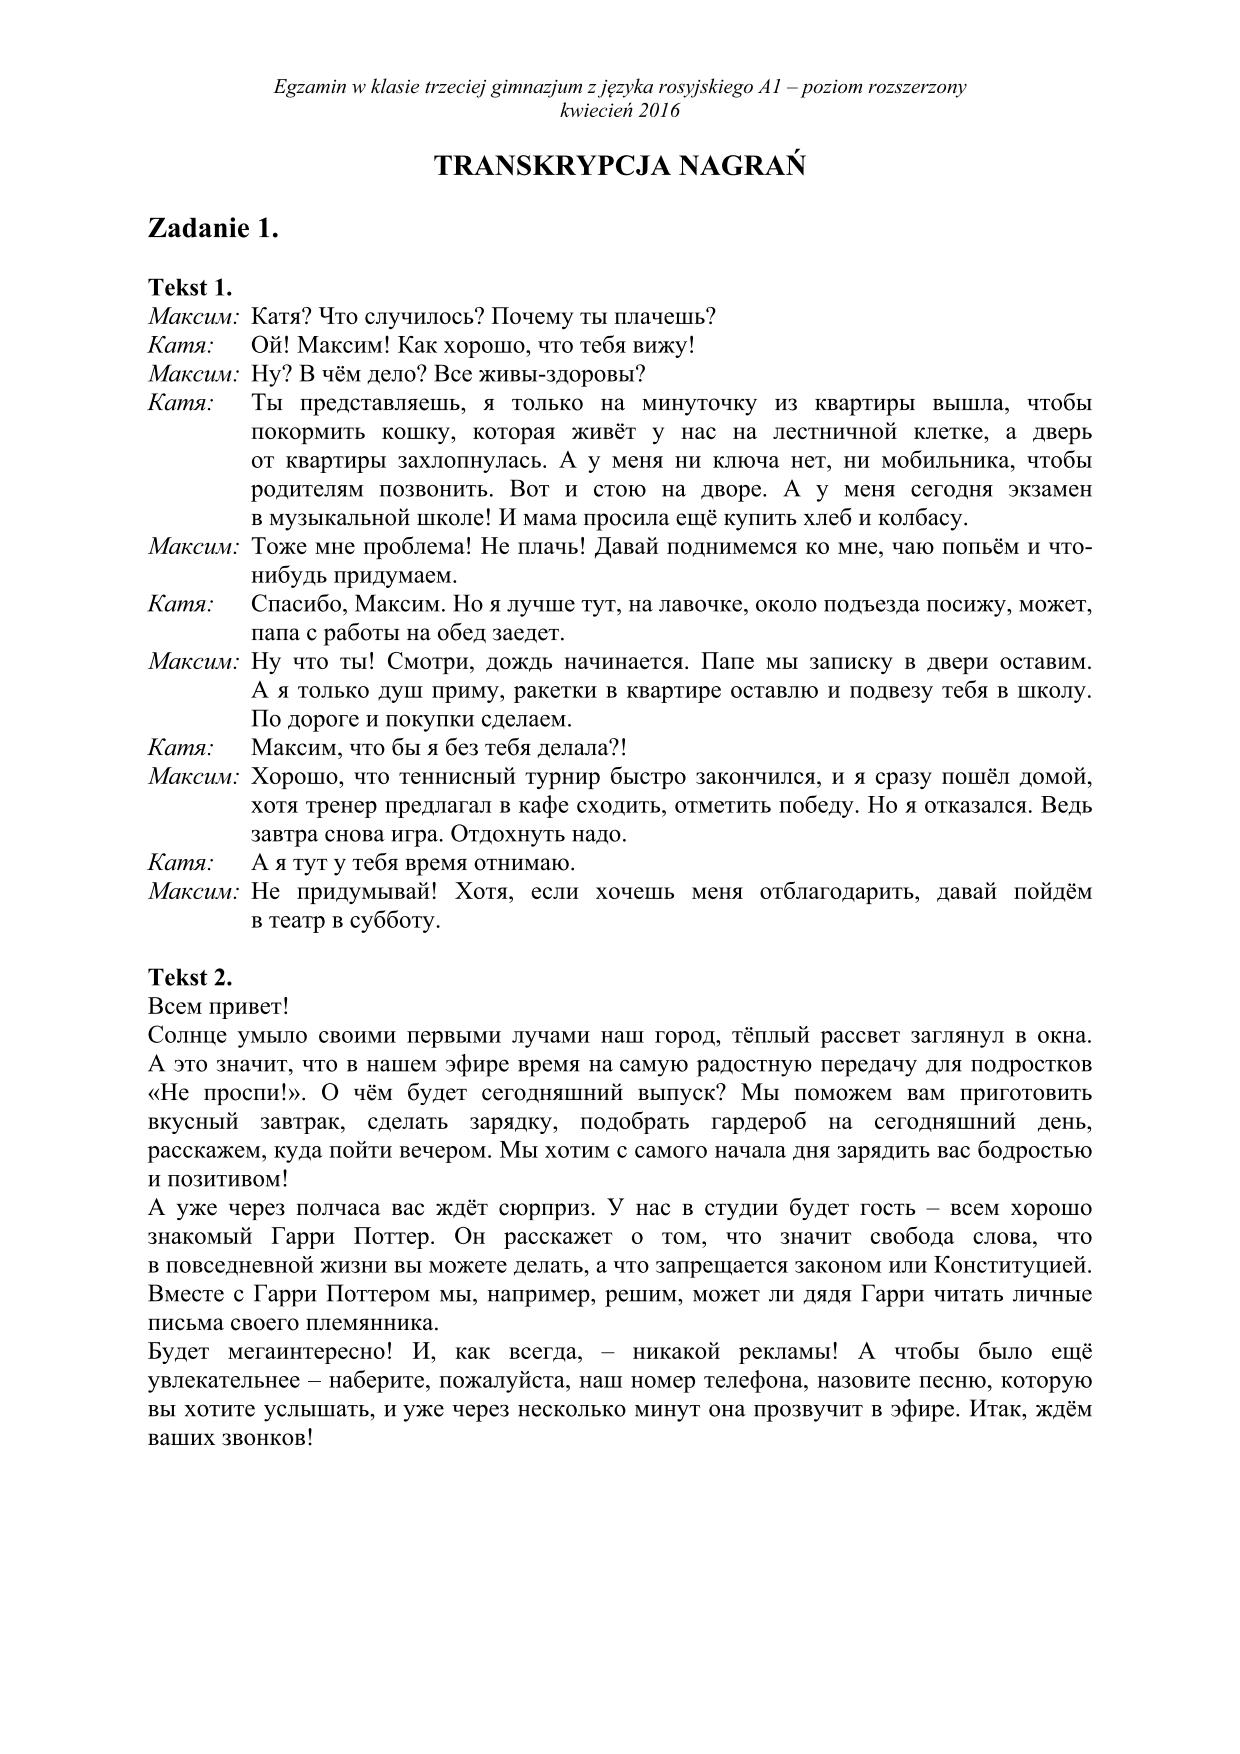 transkrypcja-rosyjski-poziom-rozszerzony-egzamin-gimnazjalny-2016 - 1